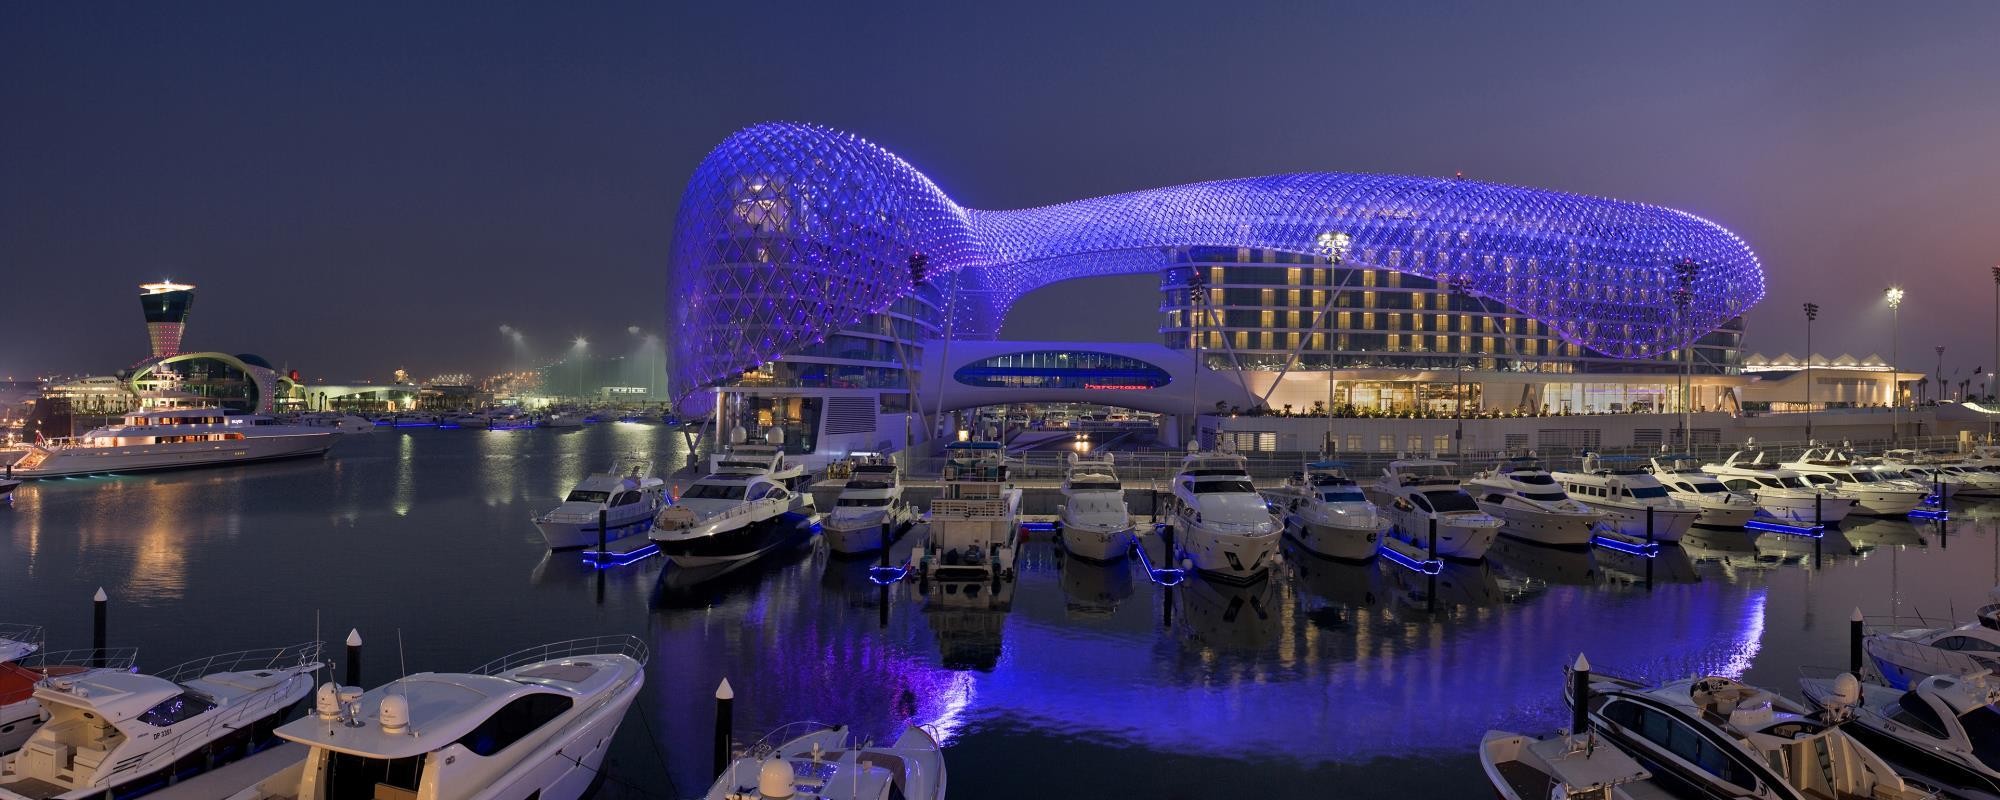 أبوظبي تحتضن أول مدينة ترفيهية بحرية في الإمارات 